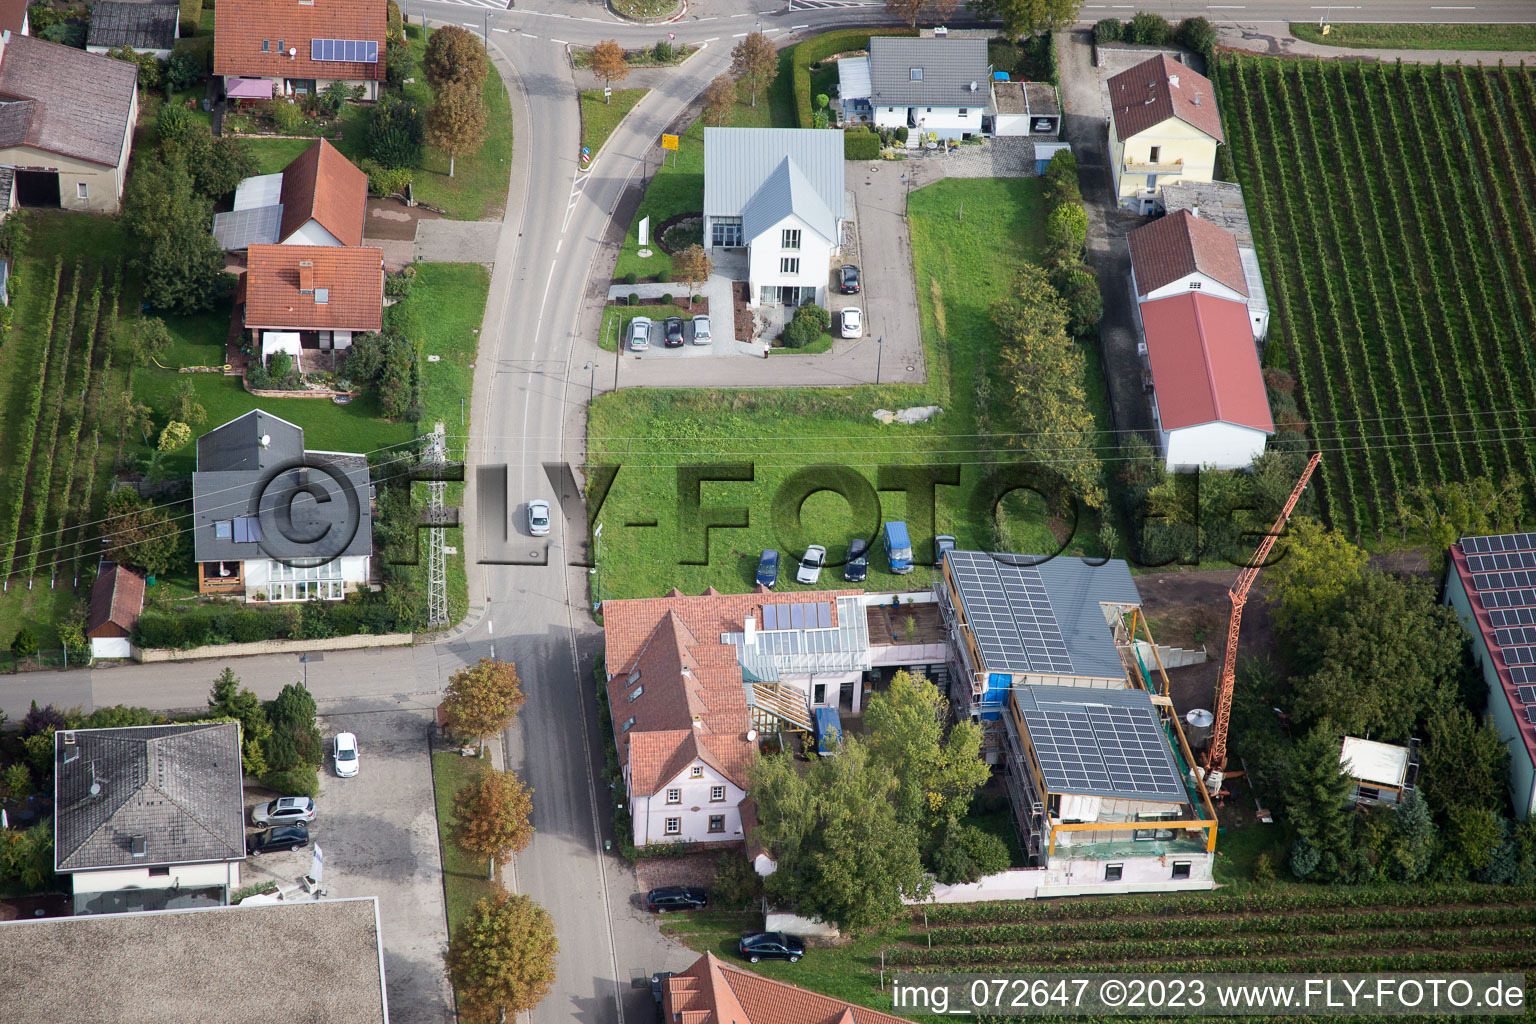 Drone recording of District Klingen in Heuchelheim-Klingen in the state Rhineland-Palatinate, Germany